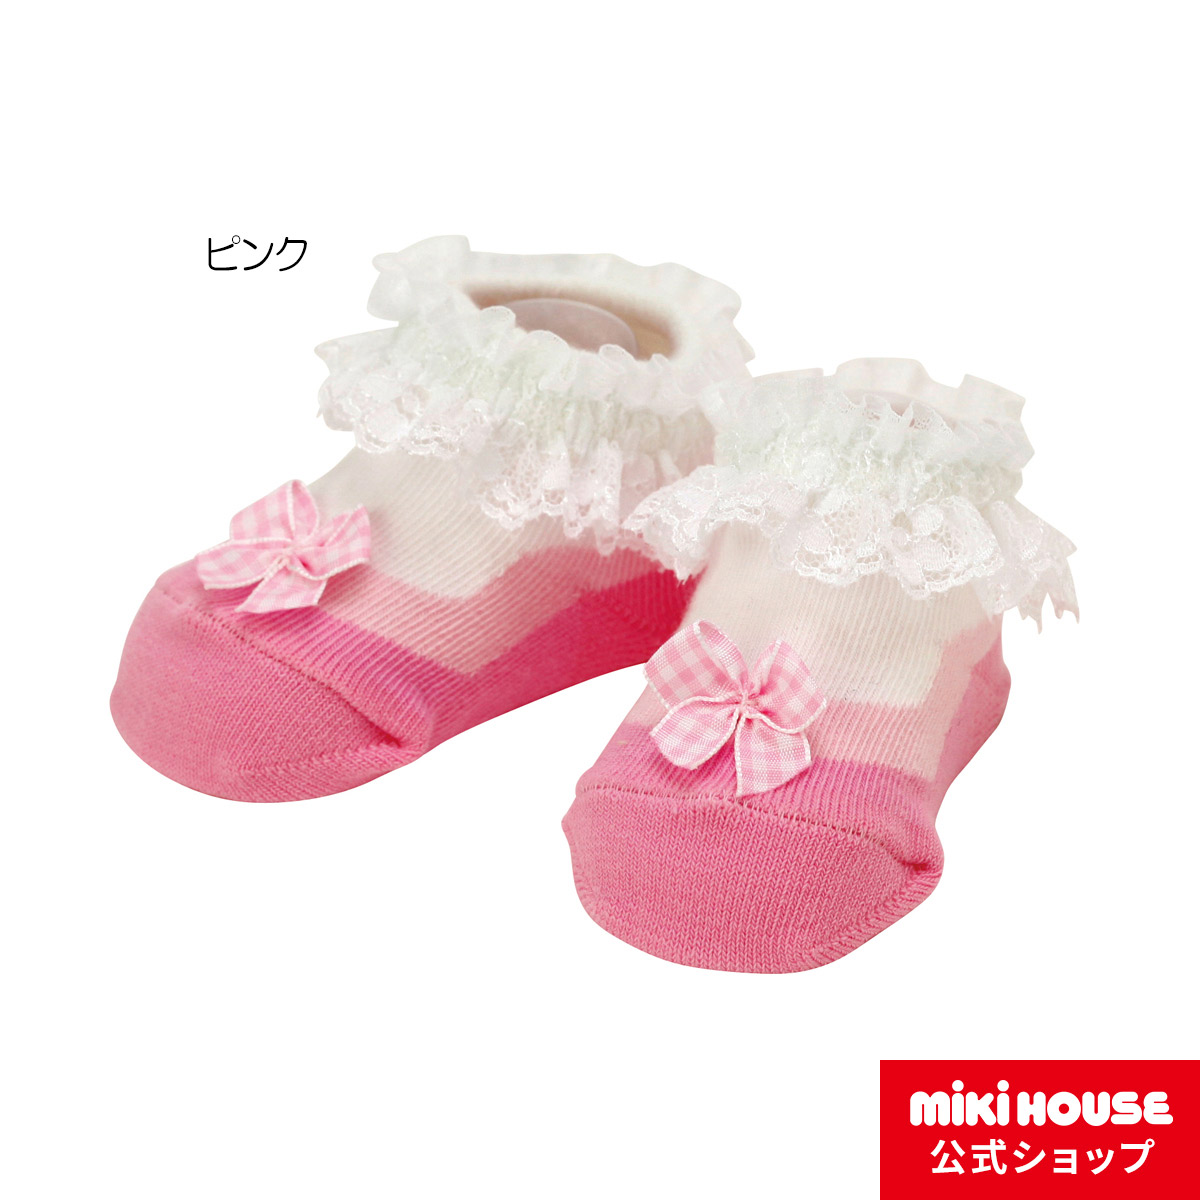 キッズ 子供用 靴下 ソックス ミキハウス mikihouse ピンク 本物保証 贅沢レースのベビーソックス ベビー 赤ちゃん 9cm-11cm 女の子 価格は安く